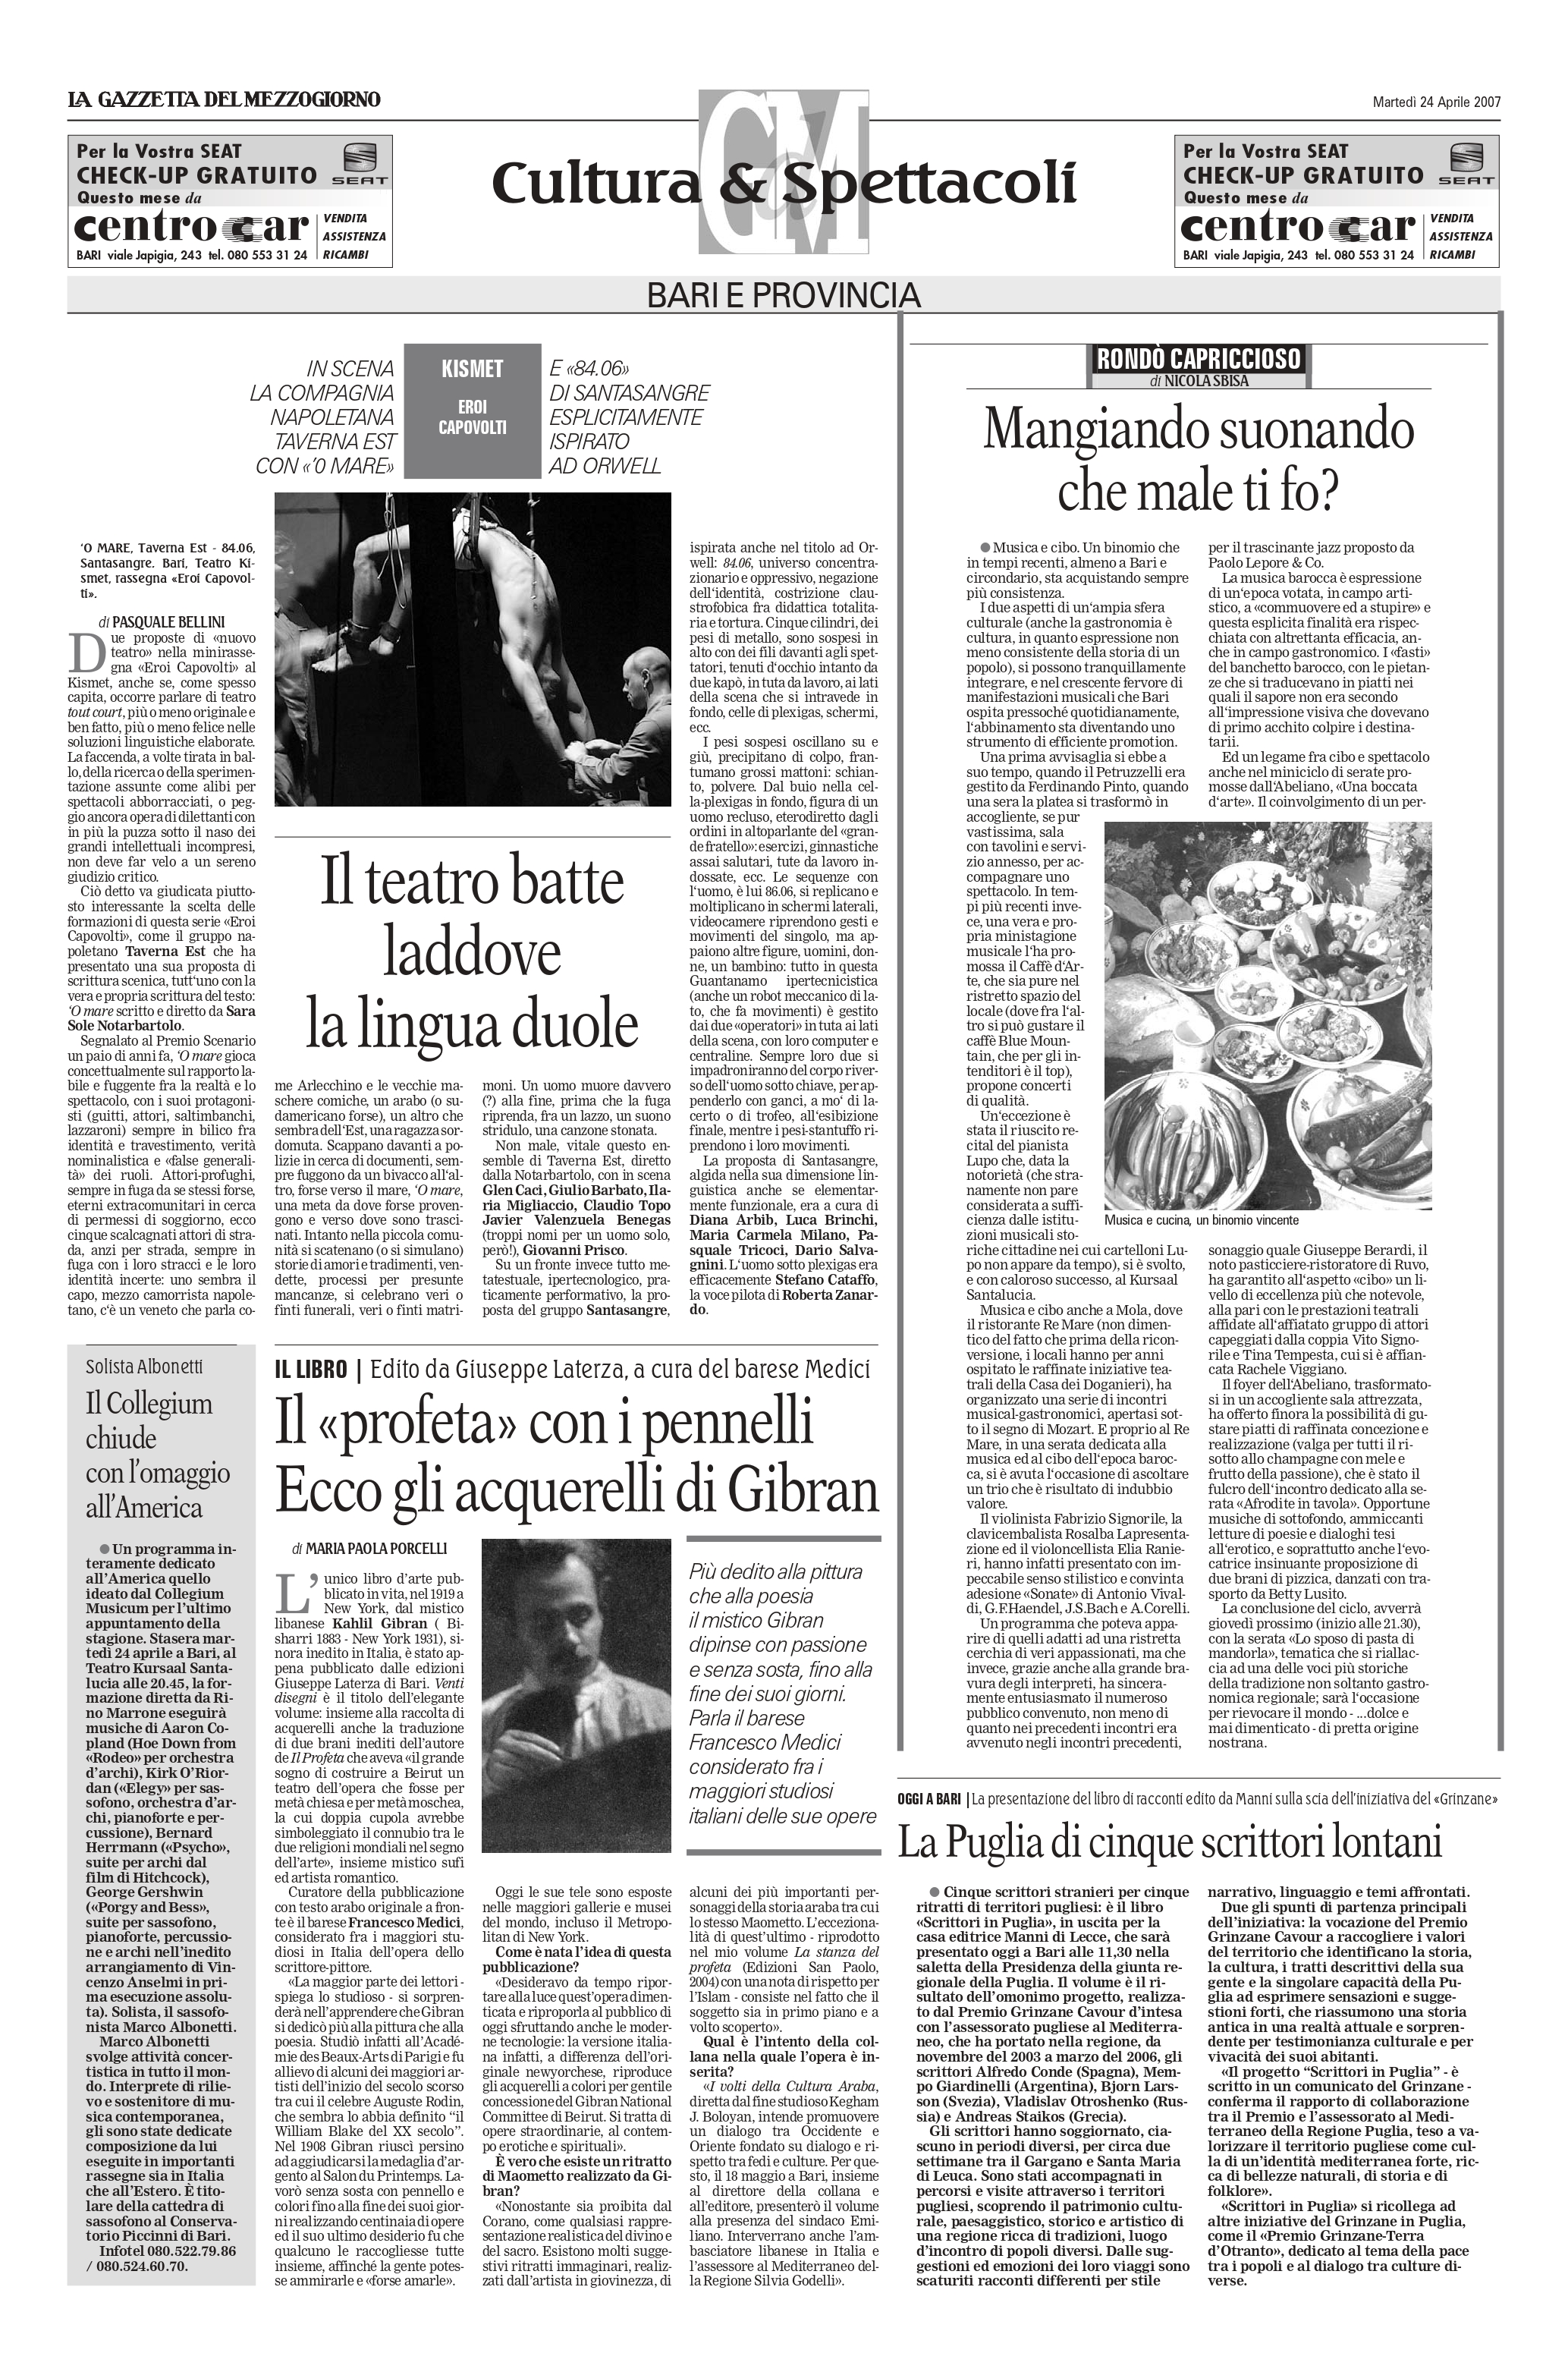 Maria Paola Porcelli, "Il «profeta» con i pennelli: Ecco gli acquerelli di Gibran", La Gazzetta del Mezzogiorno, Apr 24, 2007 (interview)